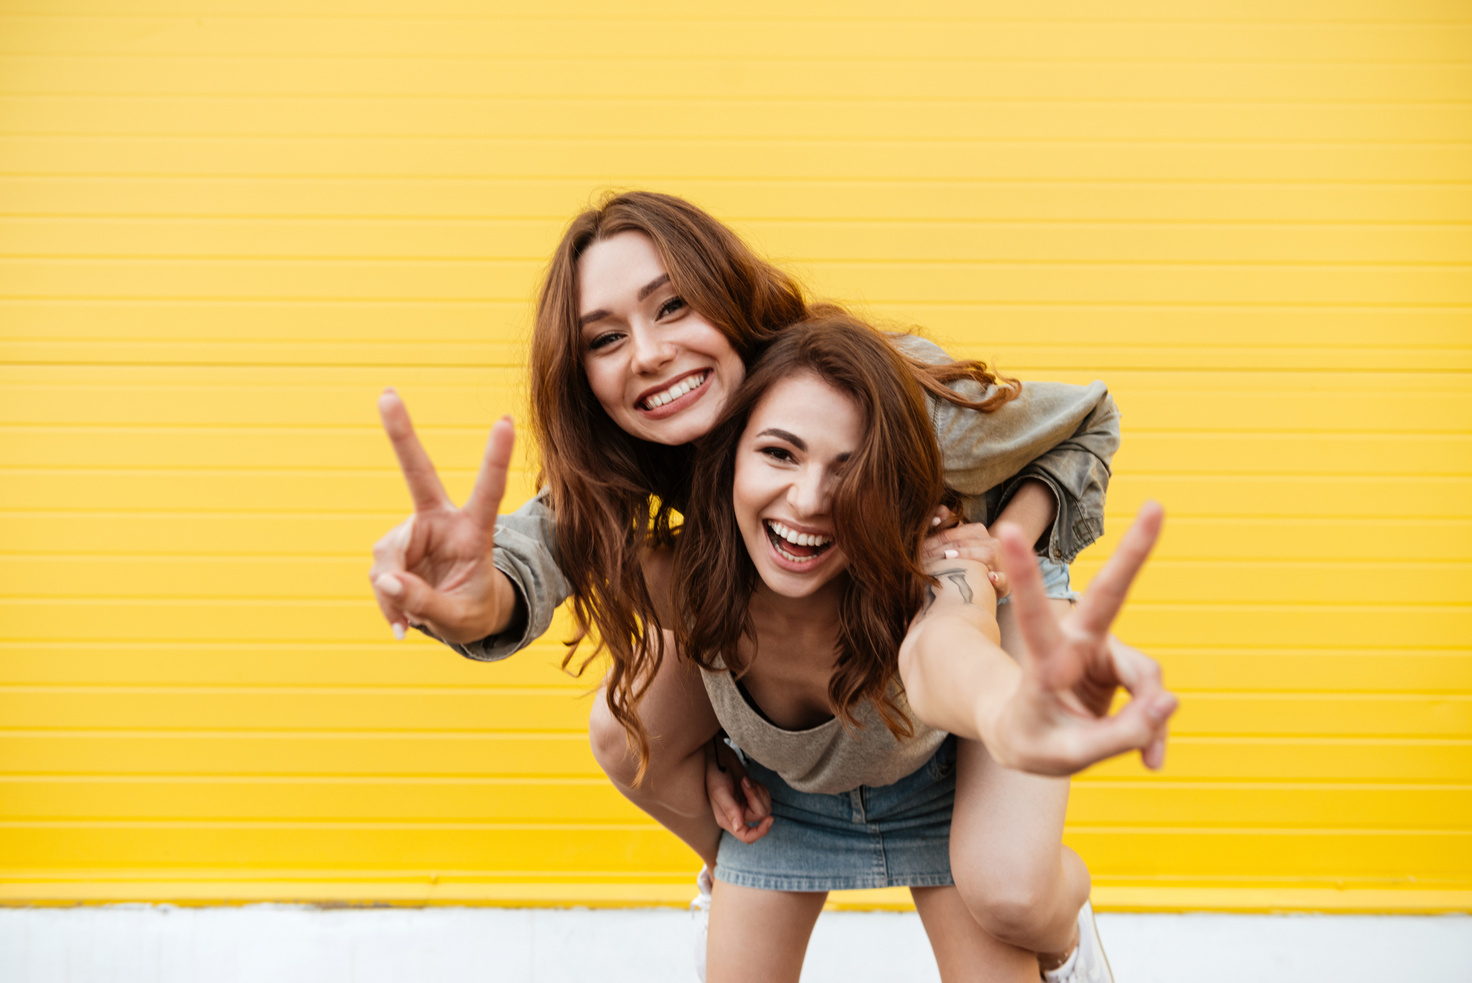 Two Young Women Friends Having Fun